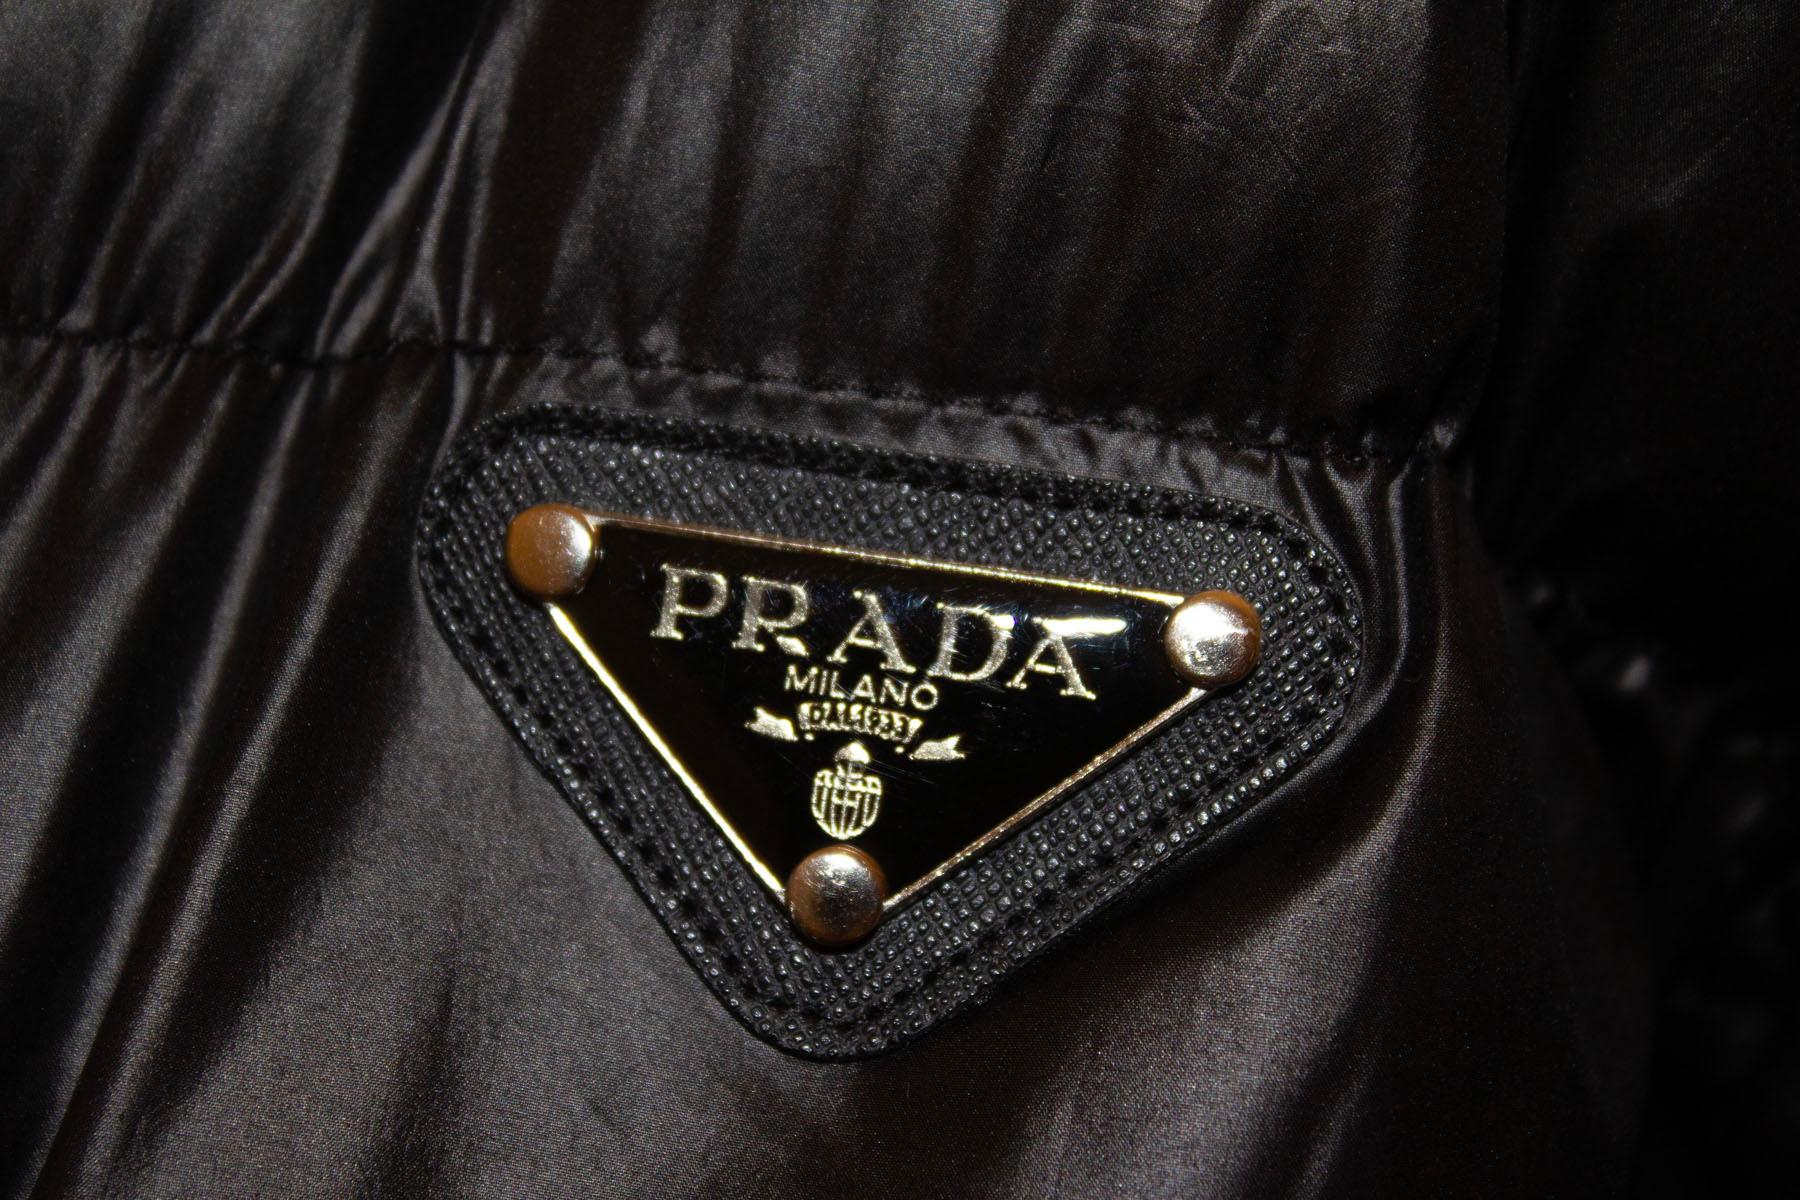 Une superbe veste noire Prada, parfaite pour l'automne/hiver. La veste est en excellent état et présente l'avantage d'avoir des manches détachables, ce qui permet de la porter comme gilet ou comme veste. 
La veste est dotée d'une ouverture centrale